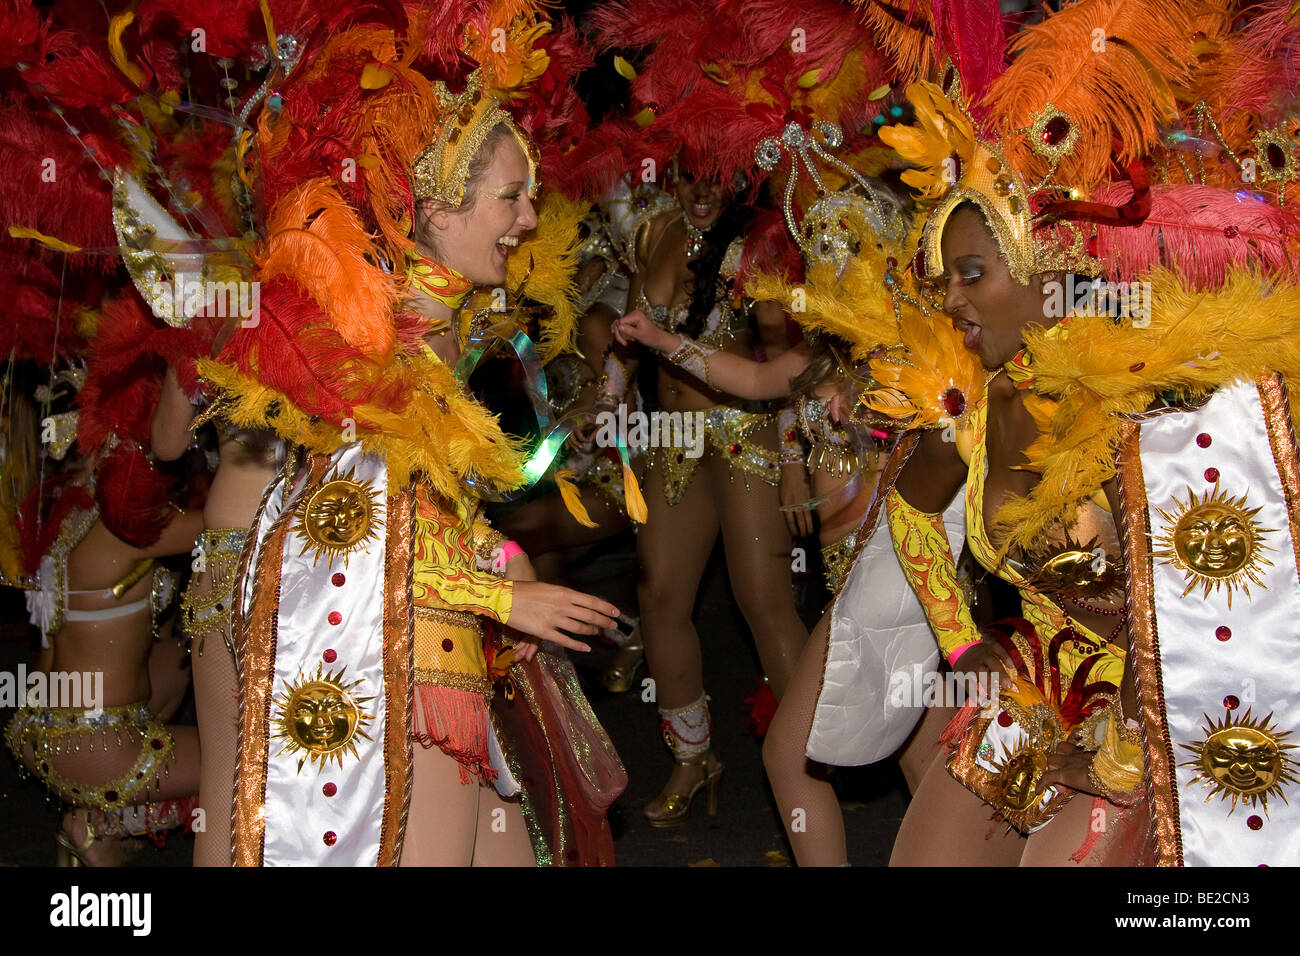 https://c8.alamy.com/comp/BE2CN3/brasil-brazilian-peacock-costume-samba-dancer-ethnic-thames-festival-BE2CN3.jpg